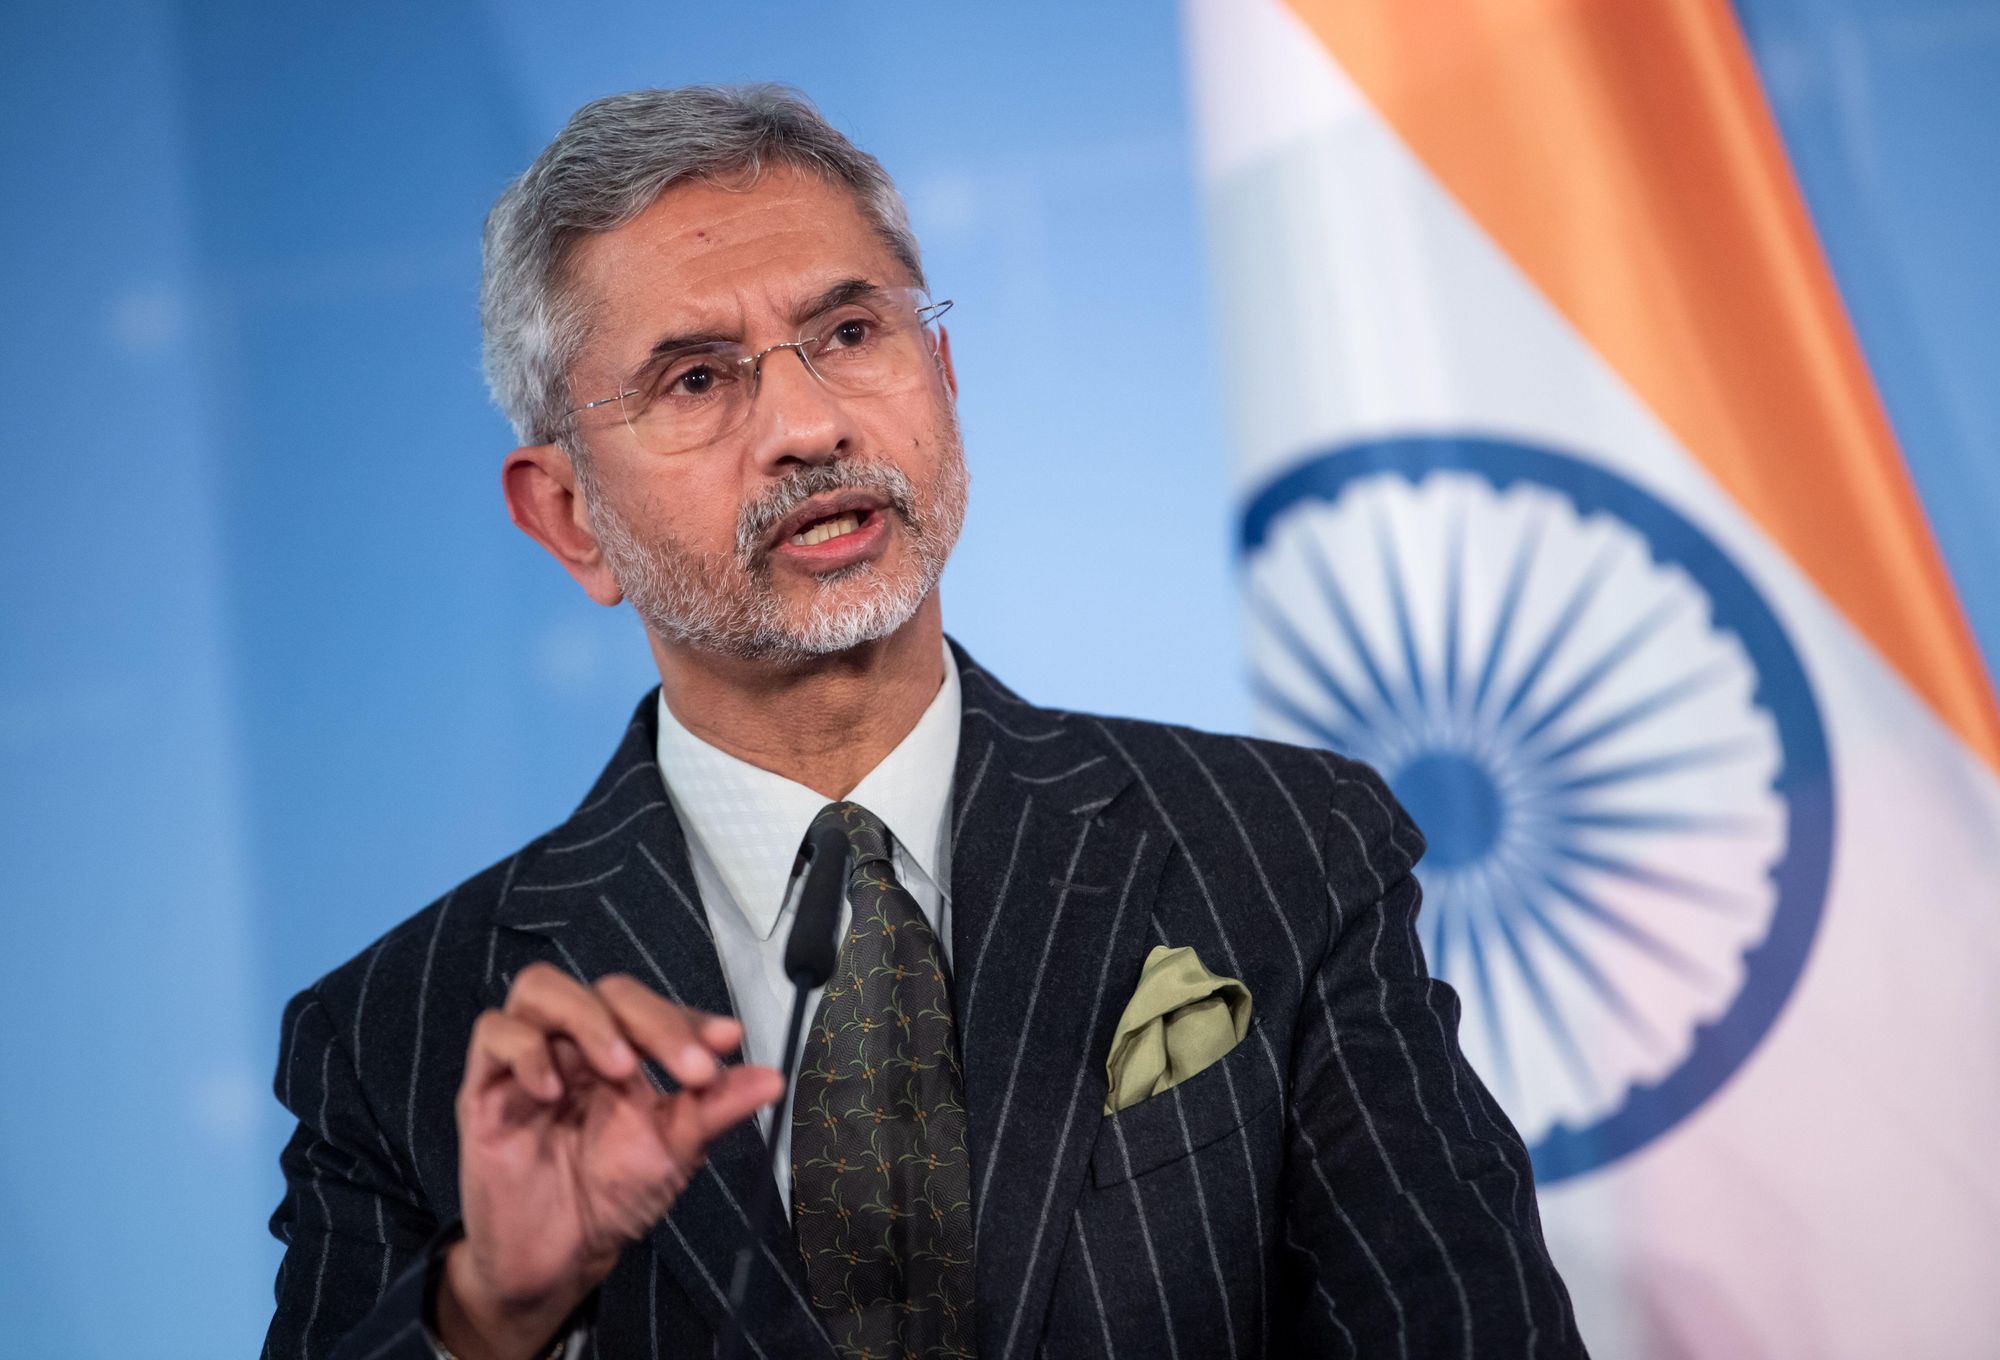 Ινδός ΥΠΕΞ: “Το Πακιστάν χρησιμοποιεί τη διασυνοριακή τρομοκρατία για να φέρει την Ινδία σε τραπέζι διαπραγματεύσεων”